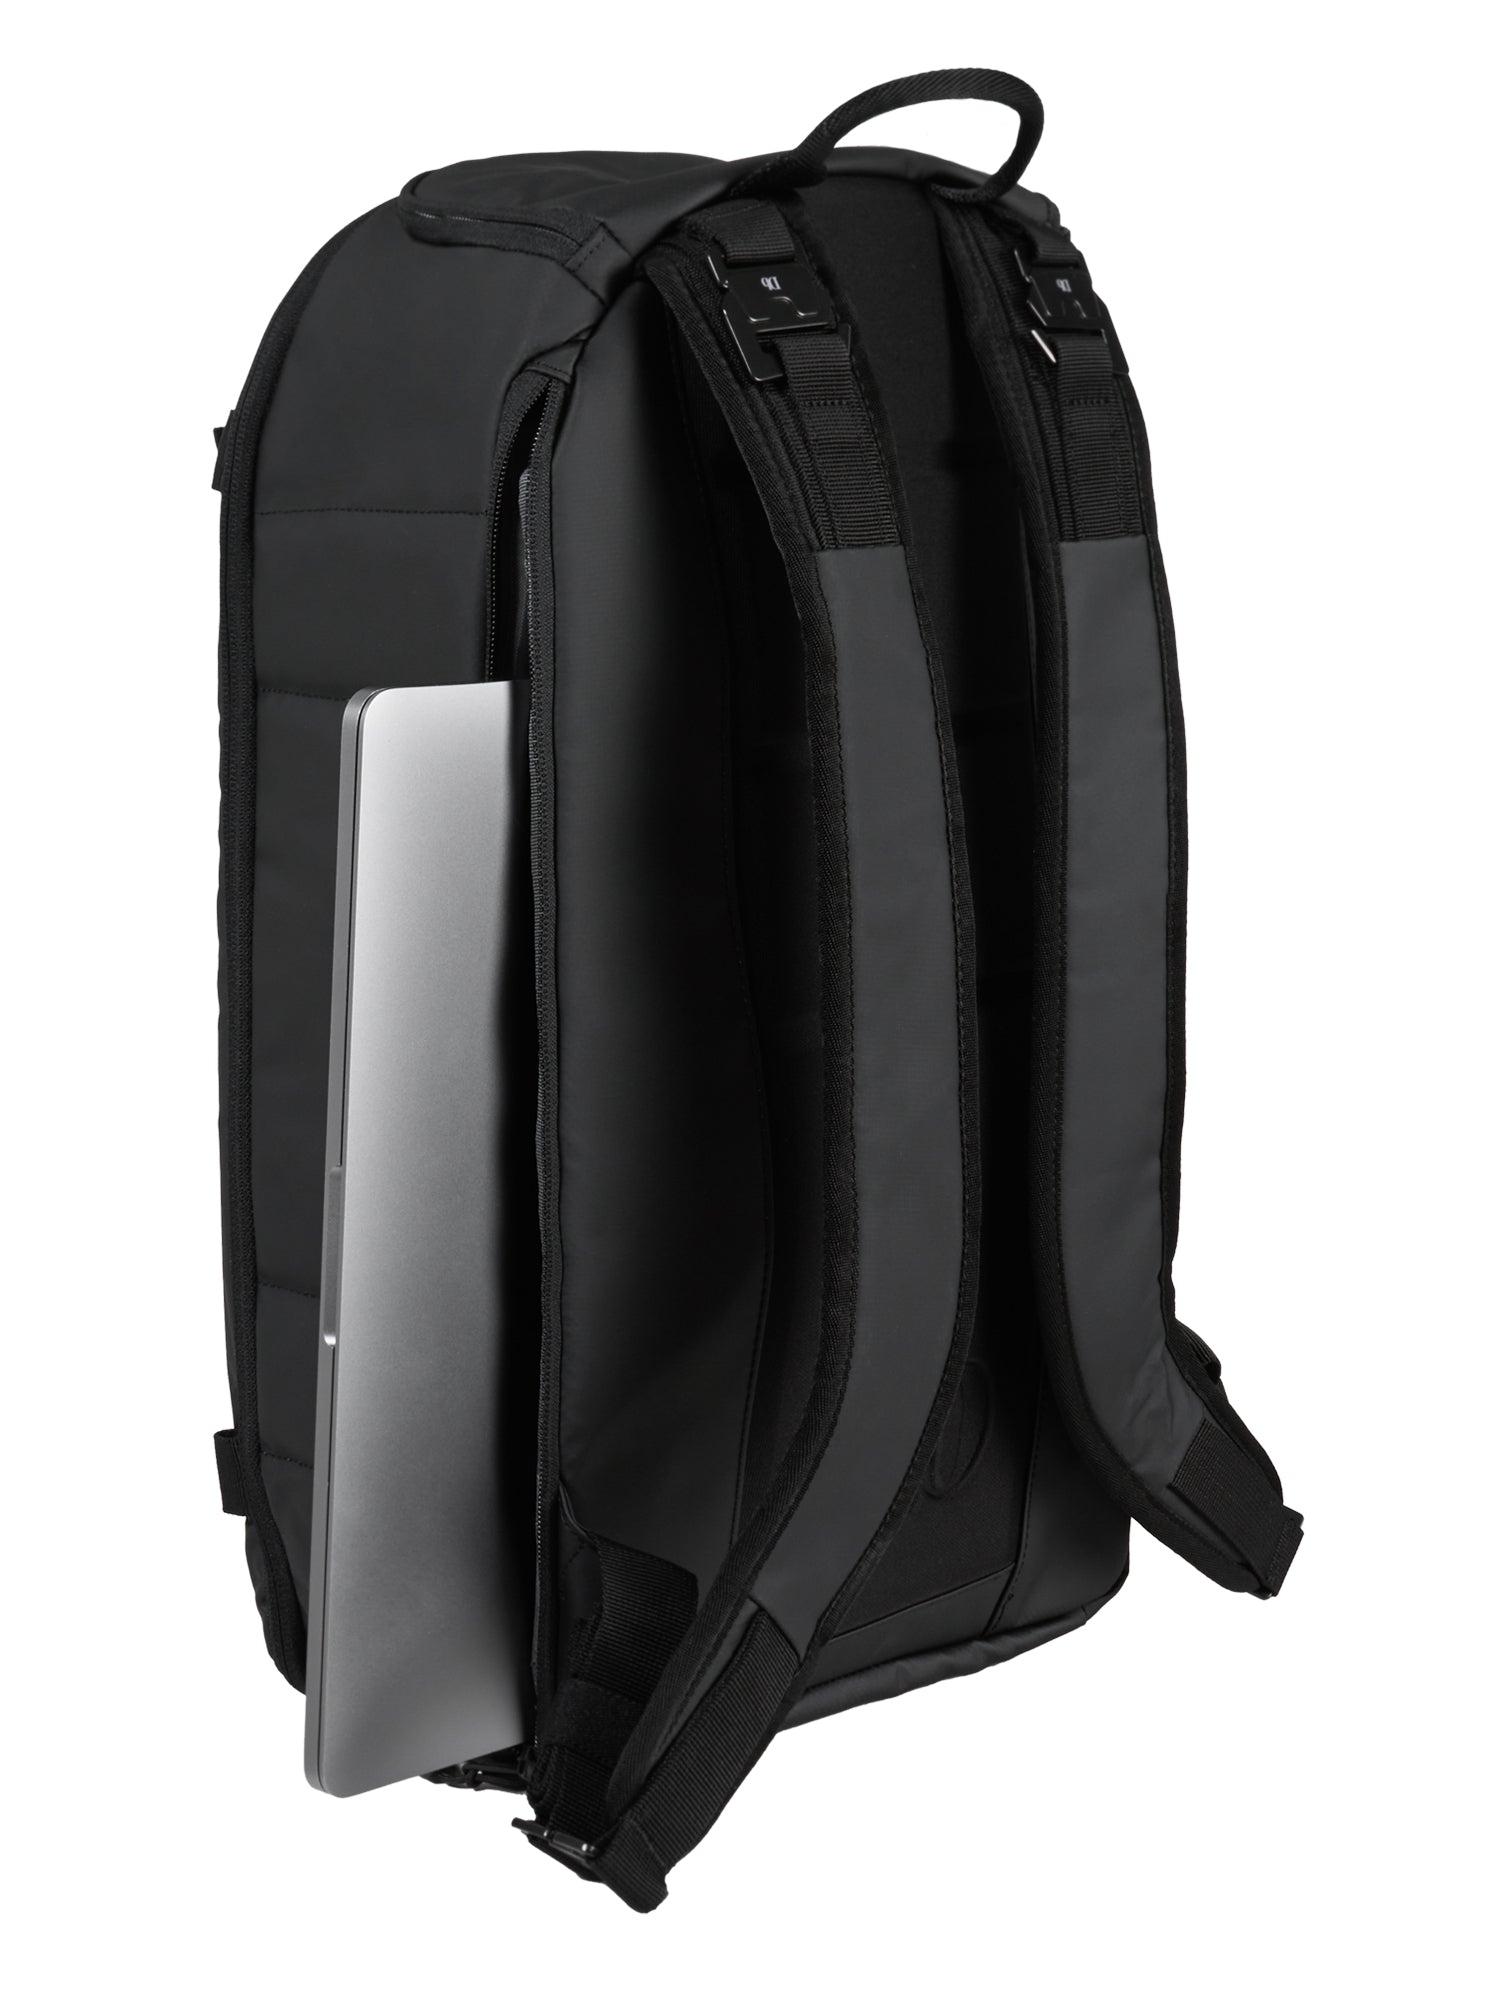 The Ramverk Backpack 21L